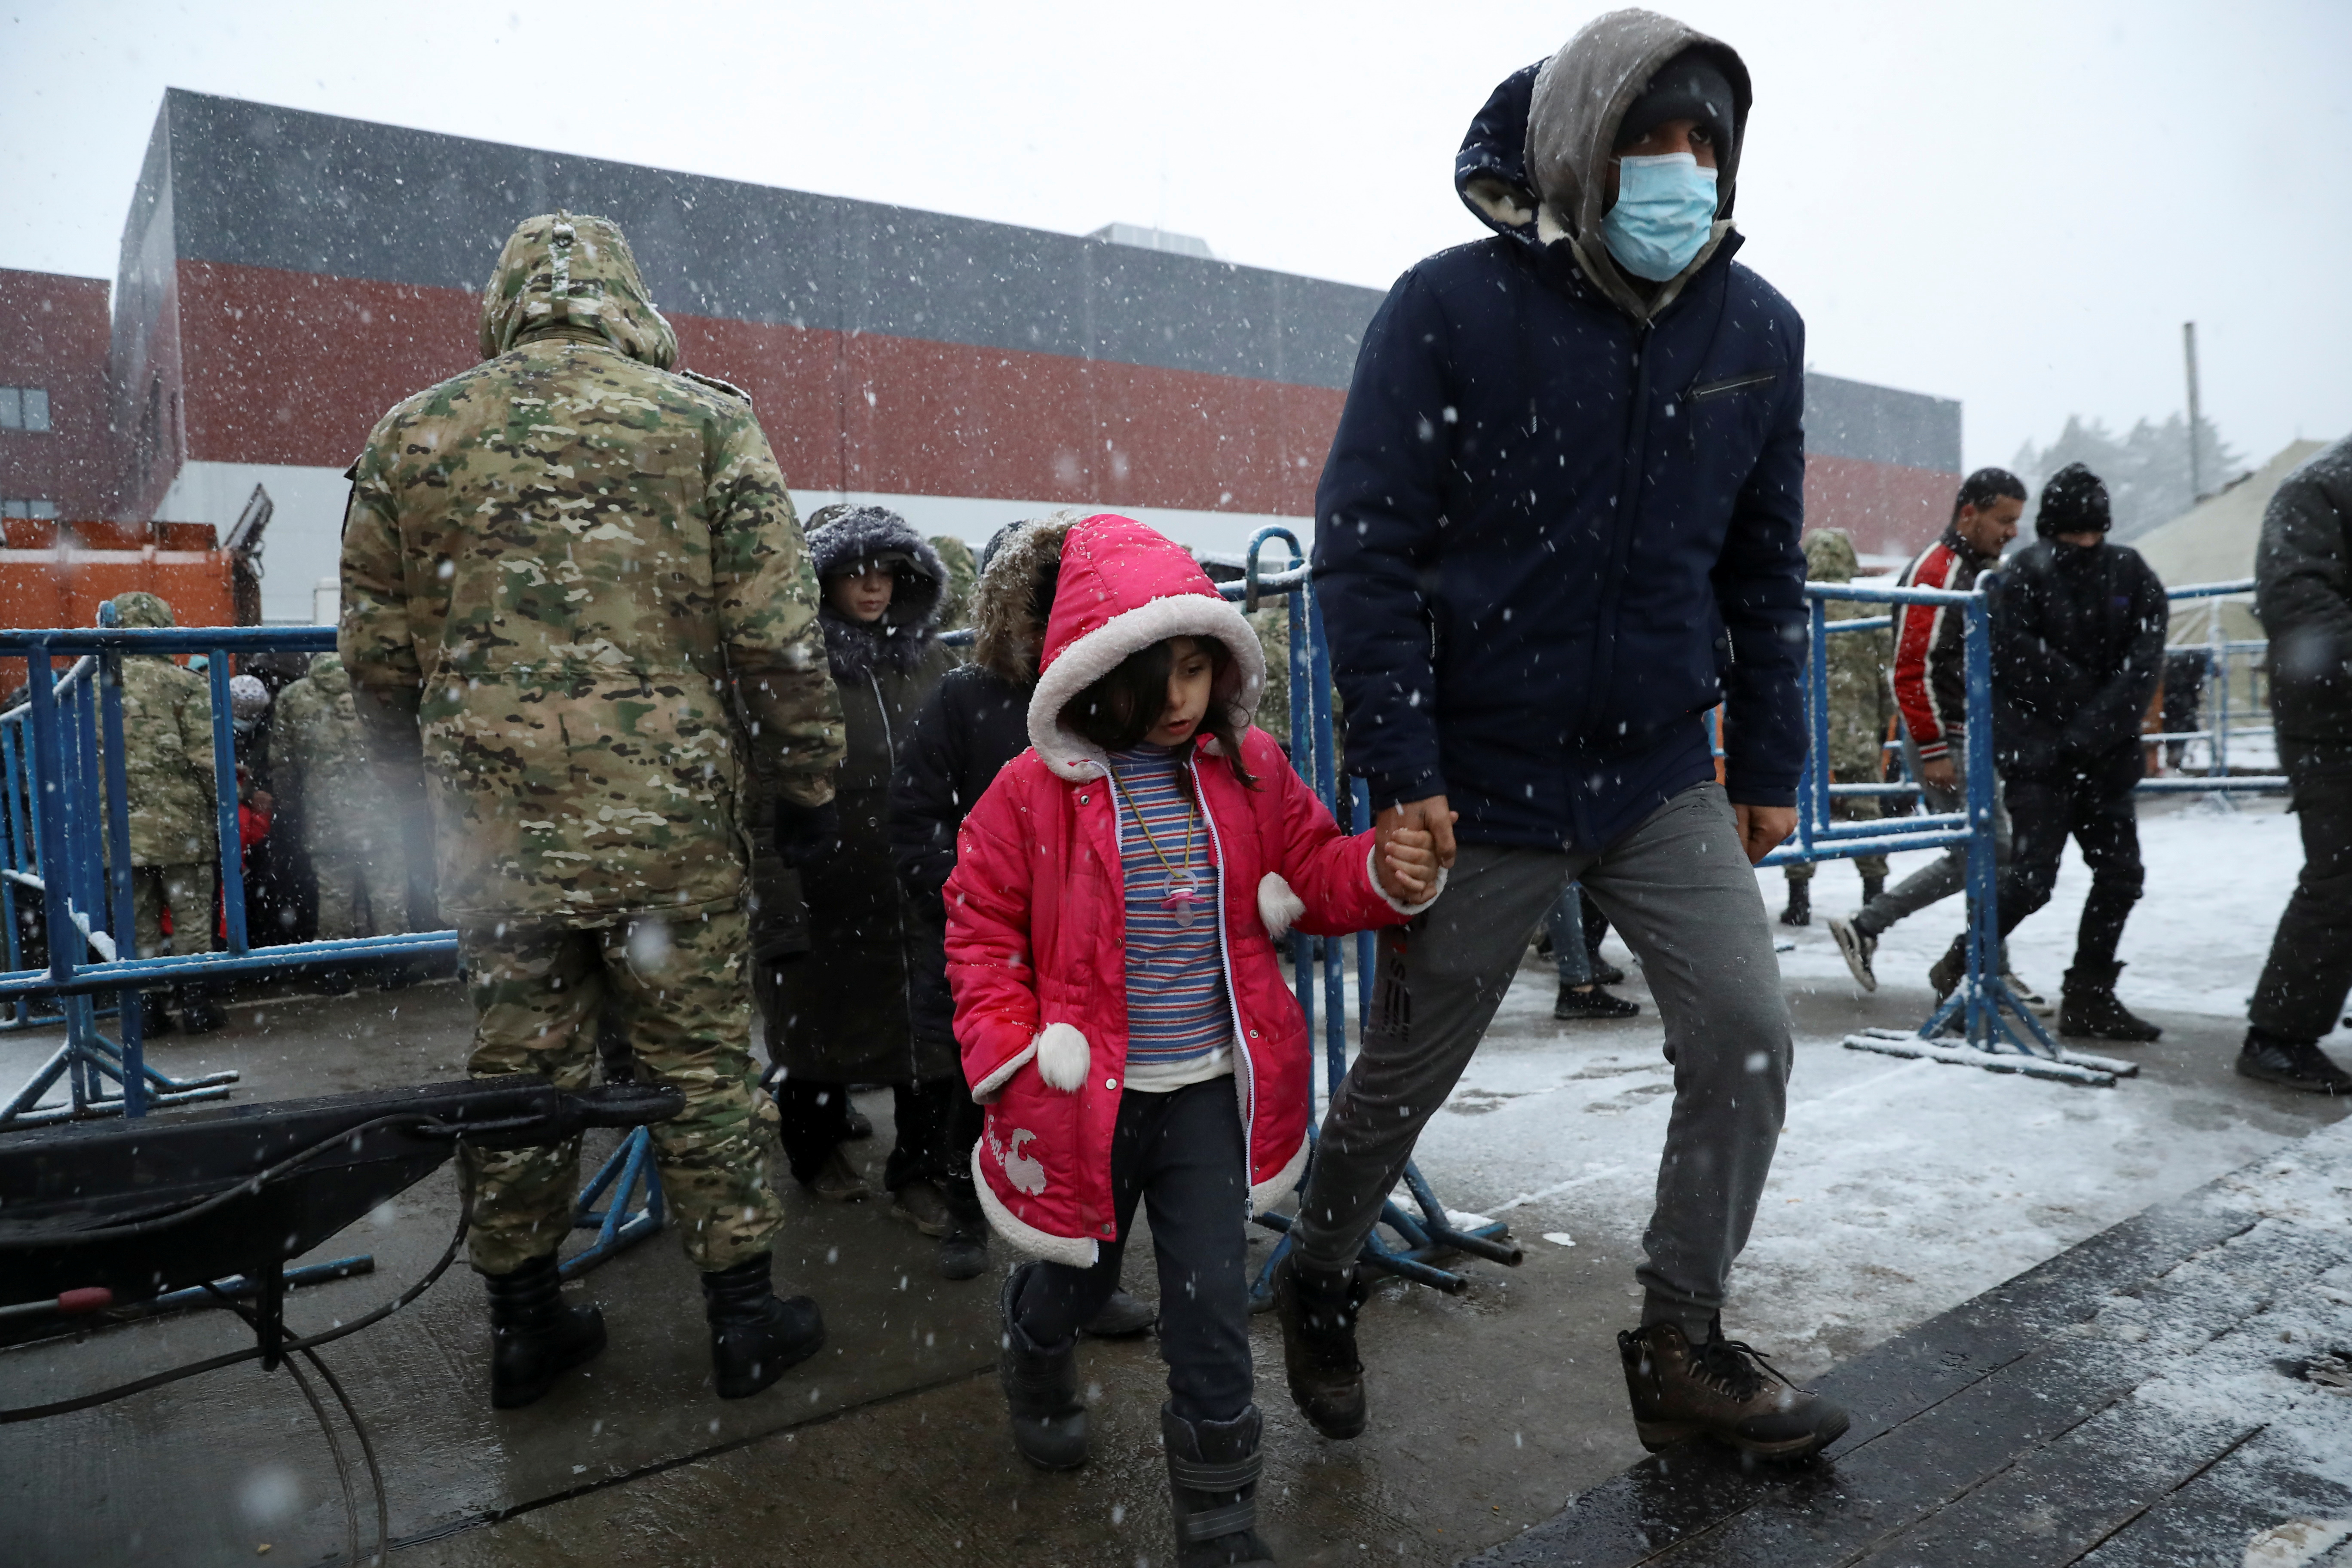 Un migrante camina con un niño durante las nevadas, en un centro de transporte y logística cerca de la frontera bielorrusa-polaca, en la región de Grodno, Bielorrusia, 23 de noviembre de 2021. REUTERS / Kacper Pempel